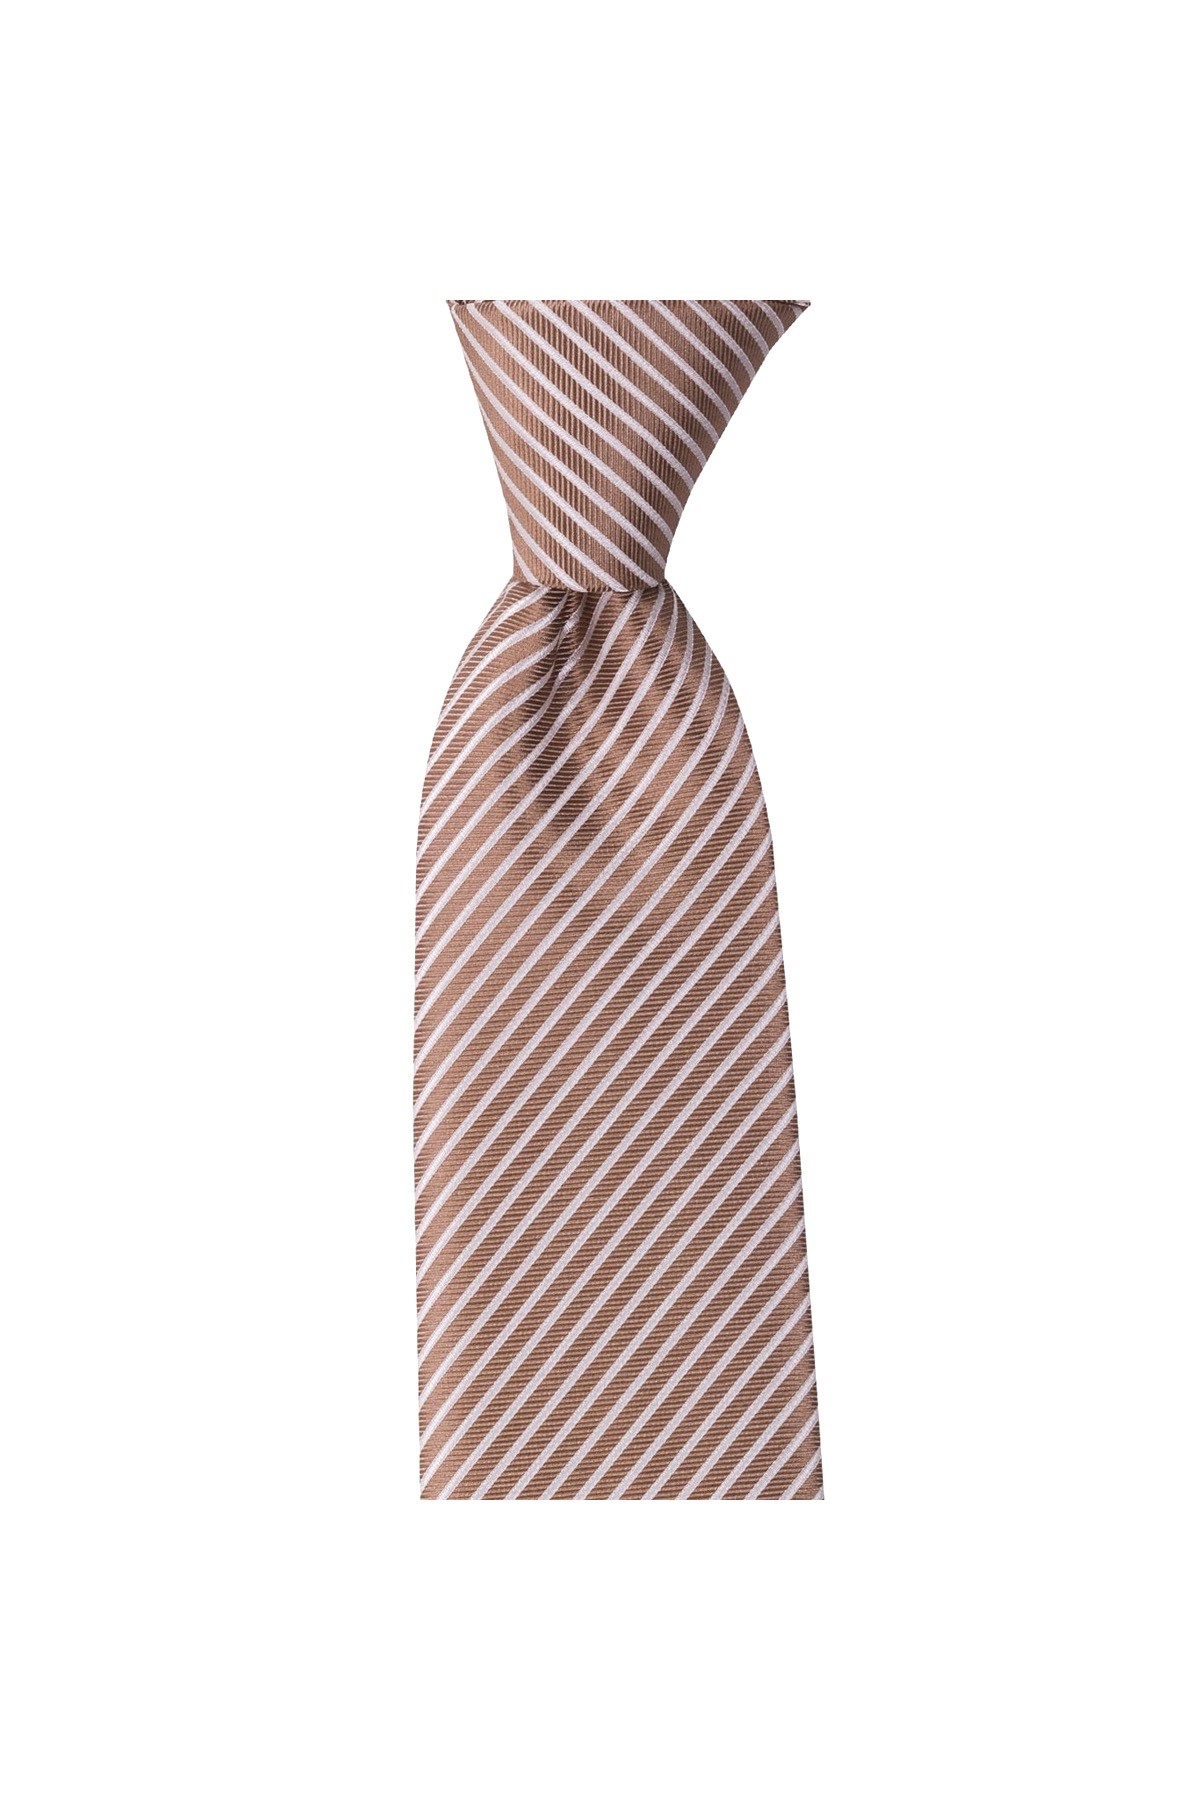 Çok çizgili 8 cm genişliğinde klasik kravat - Bej